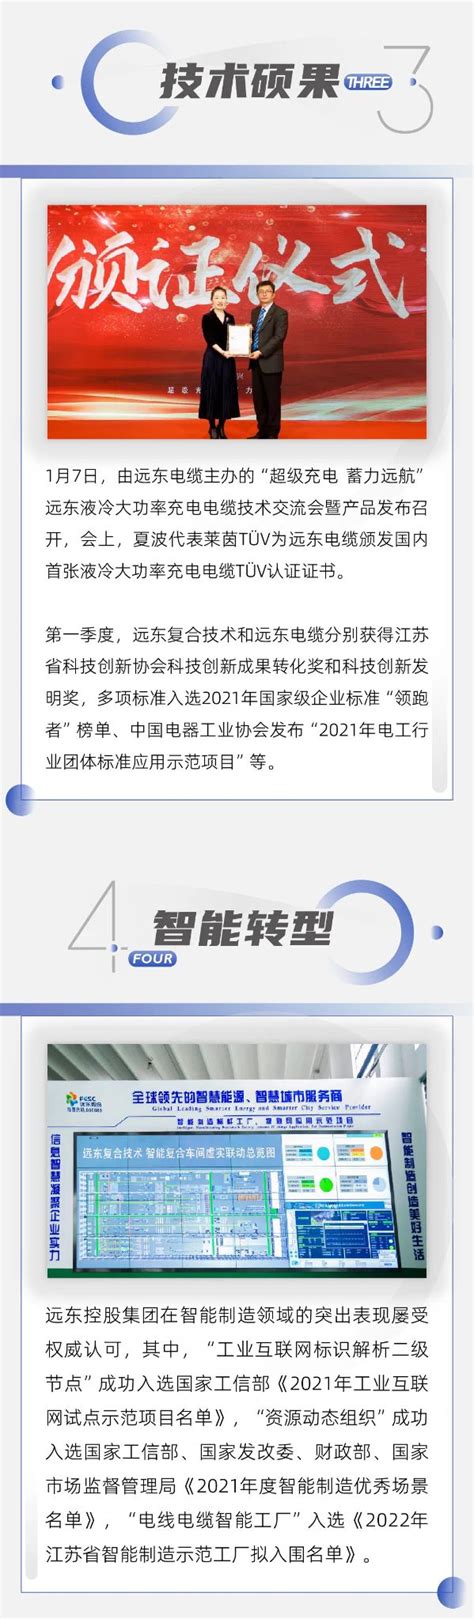 远东控股集团荣获2019中国最具创新力知识型组织（MIKE）大奖 - 快讯 - 华财网-三言智创咨询网